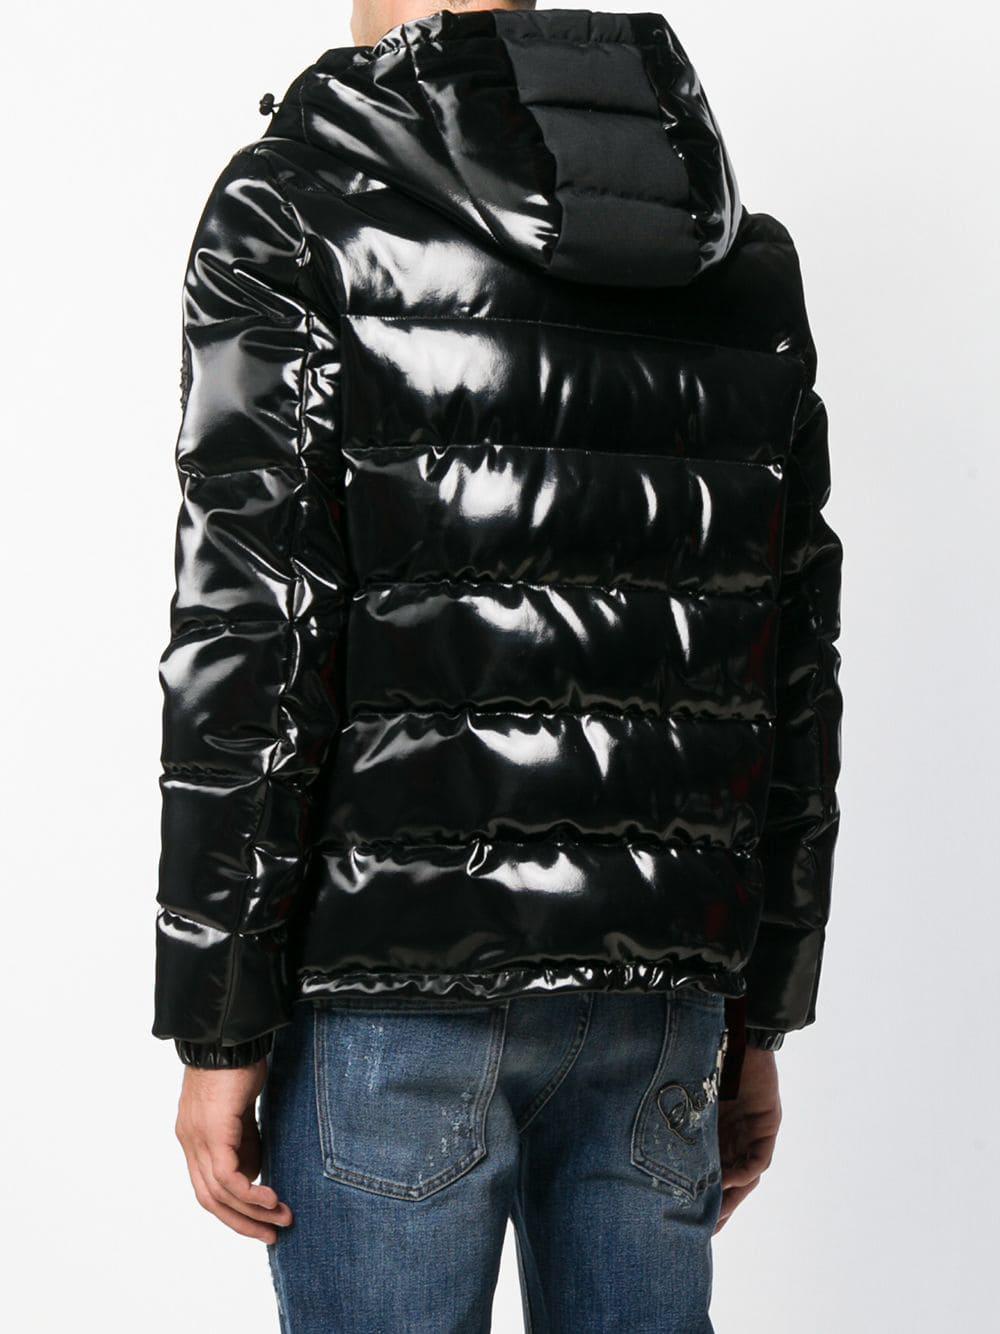 Philipp Plein Vinyl Padded Jacket in Black for Men - Lyst